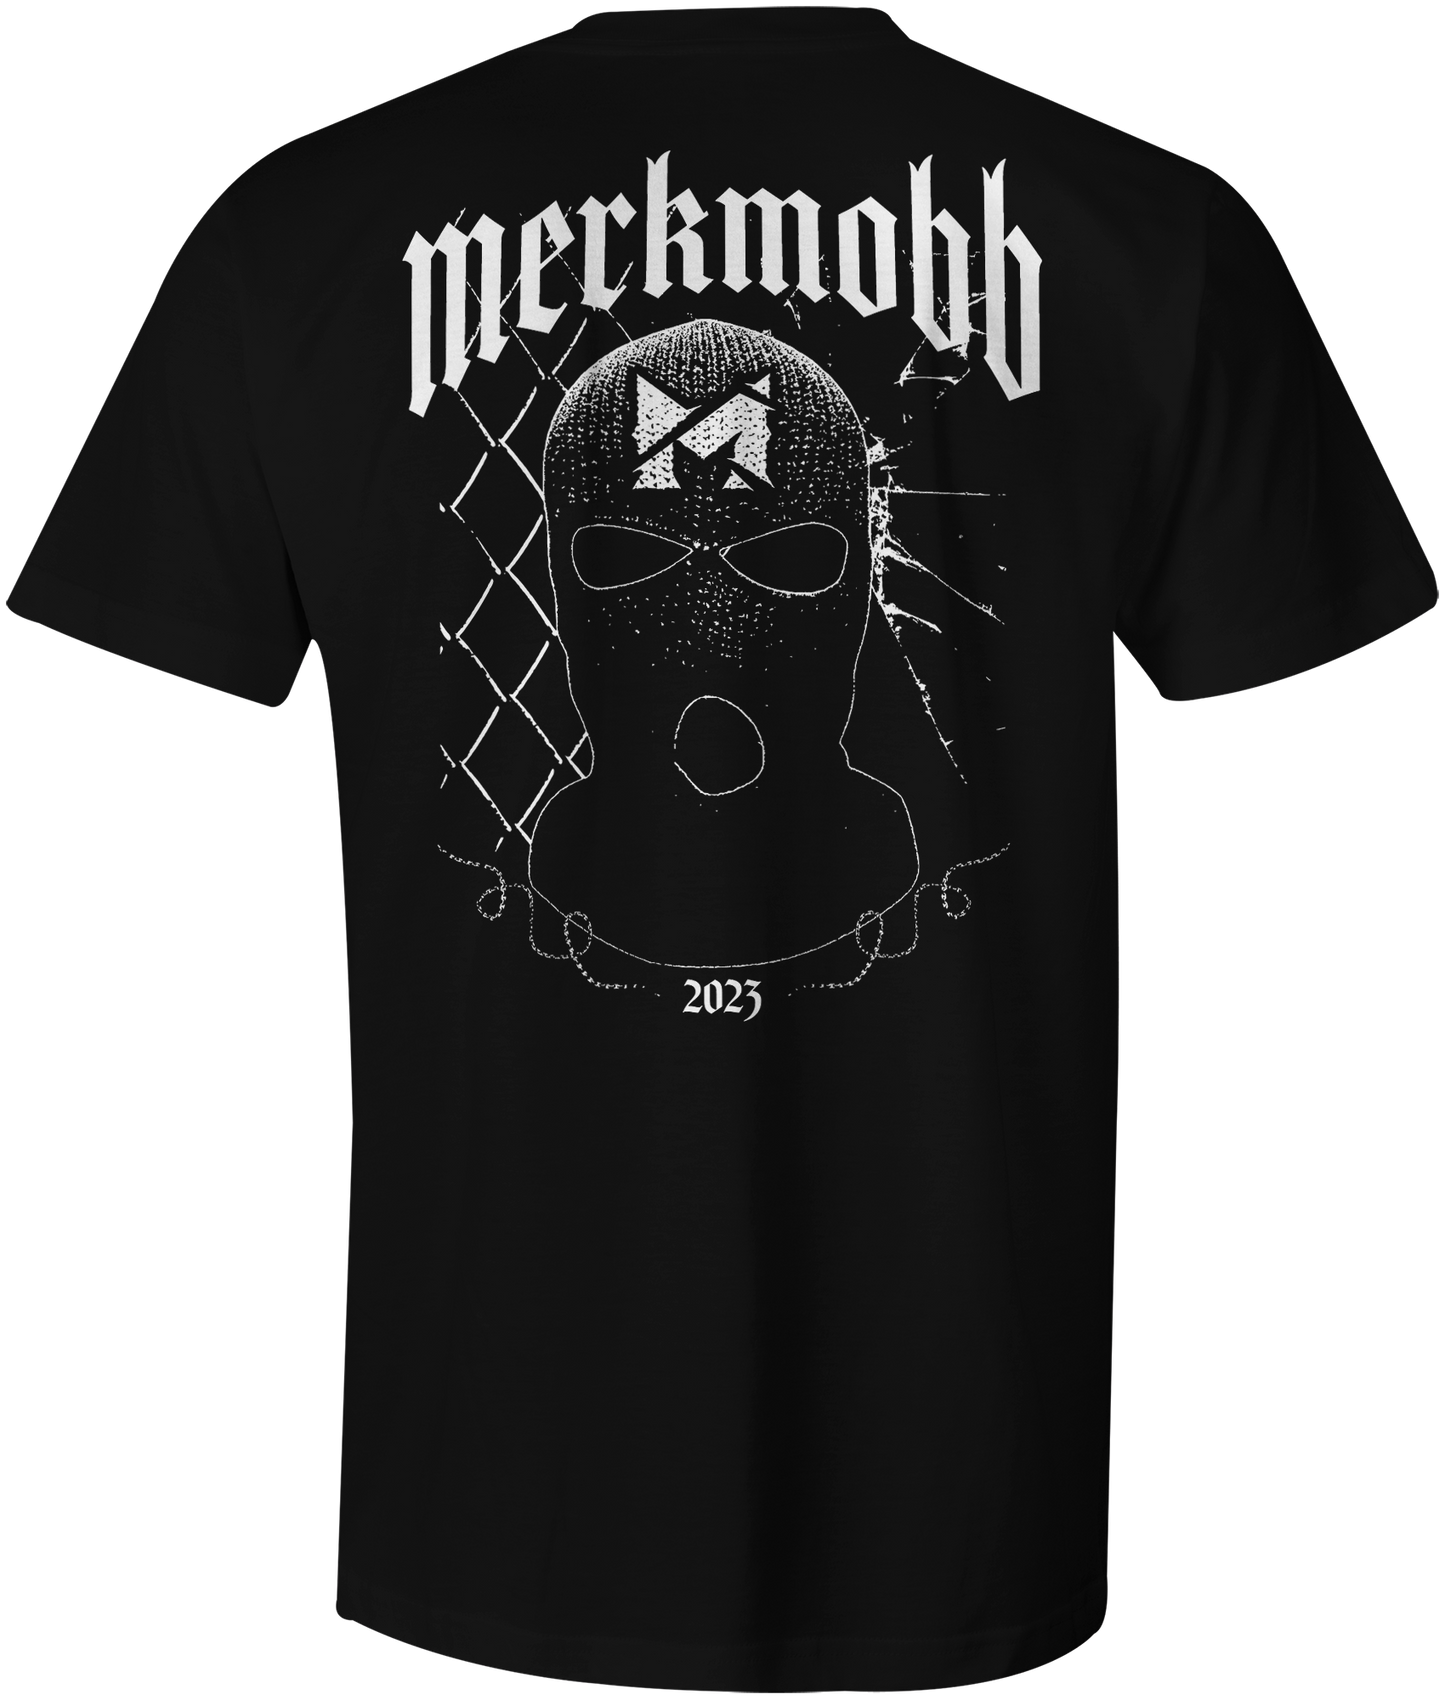 Merk Mobb T-Shirt